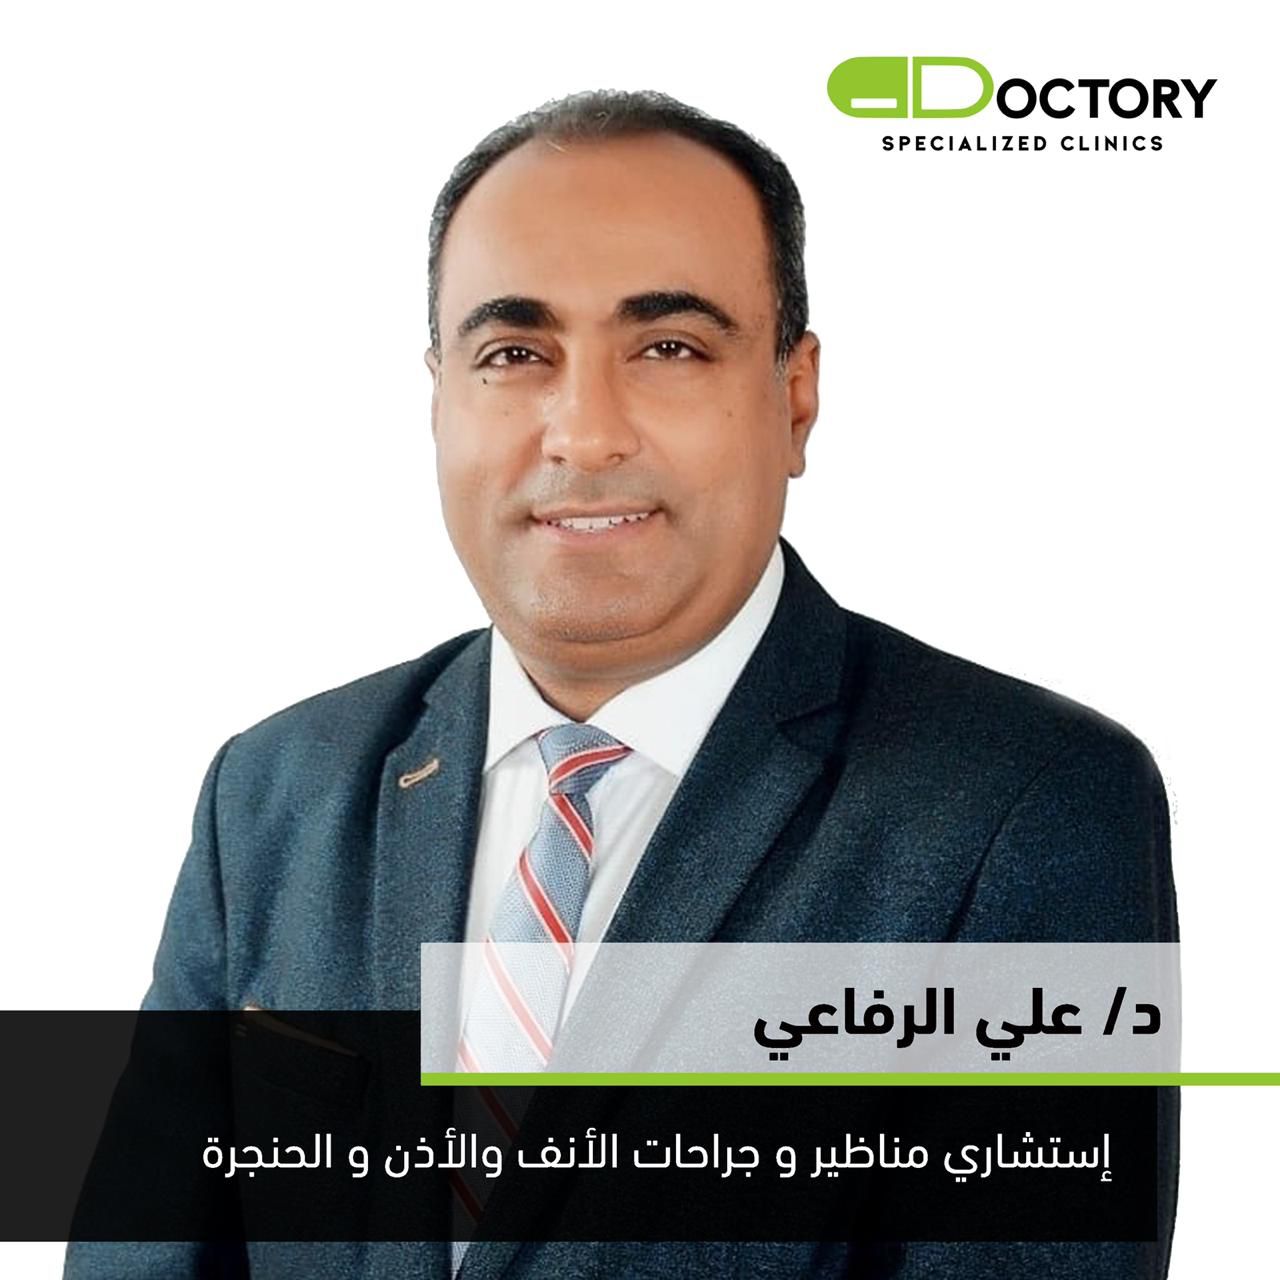 Dr. Ali El Rafea